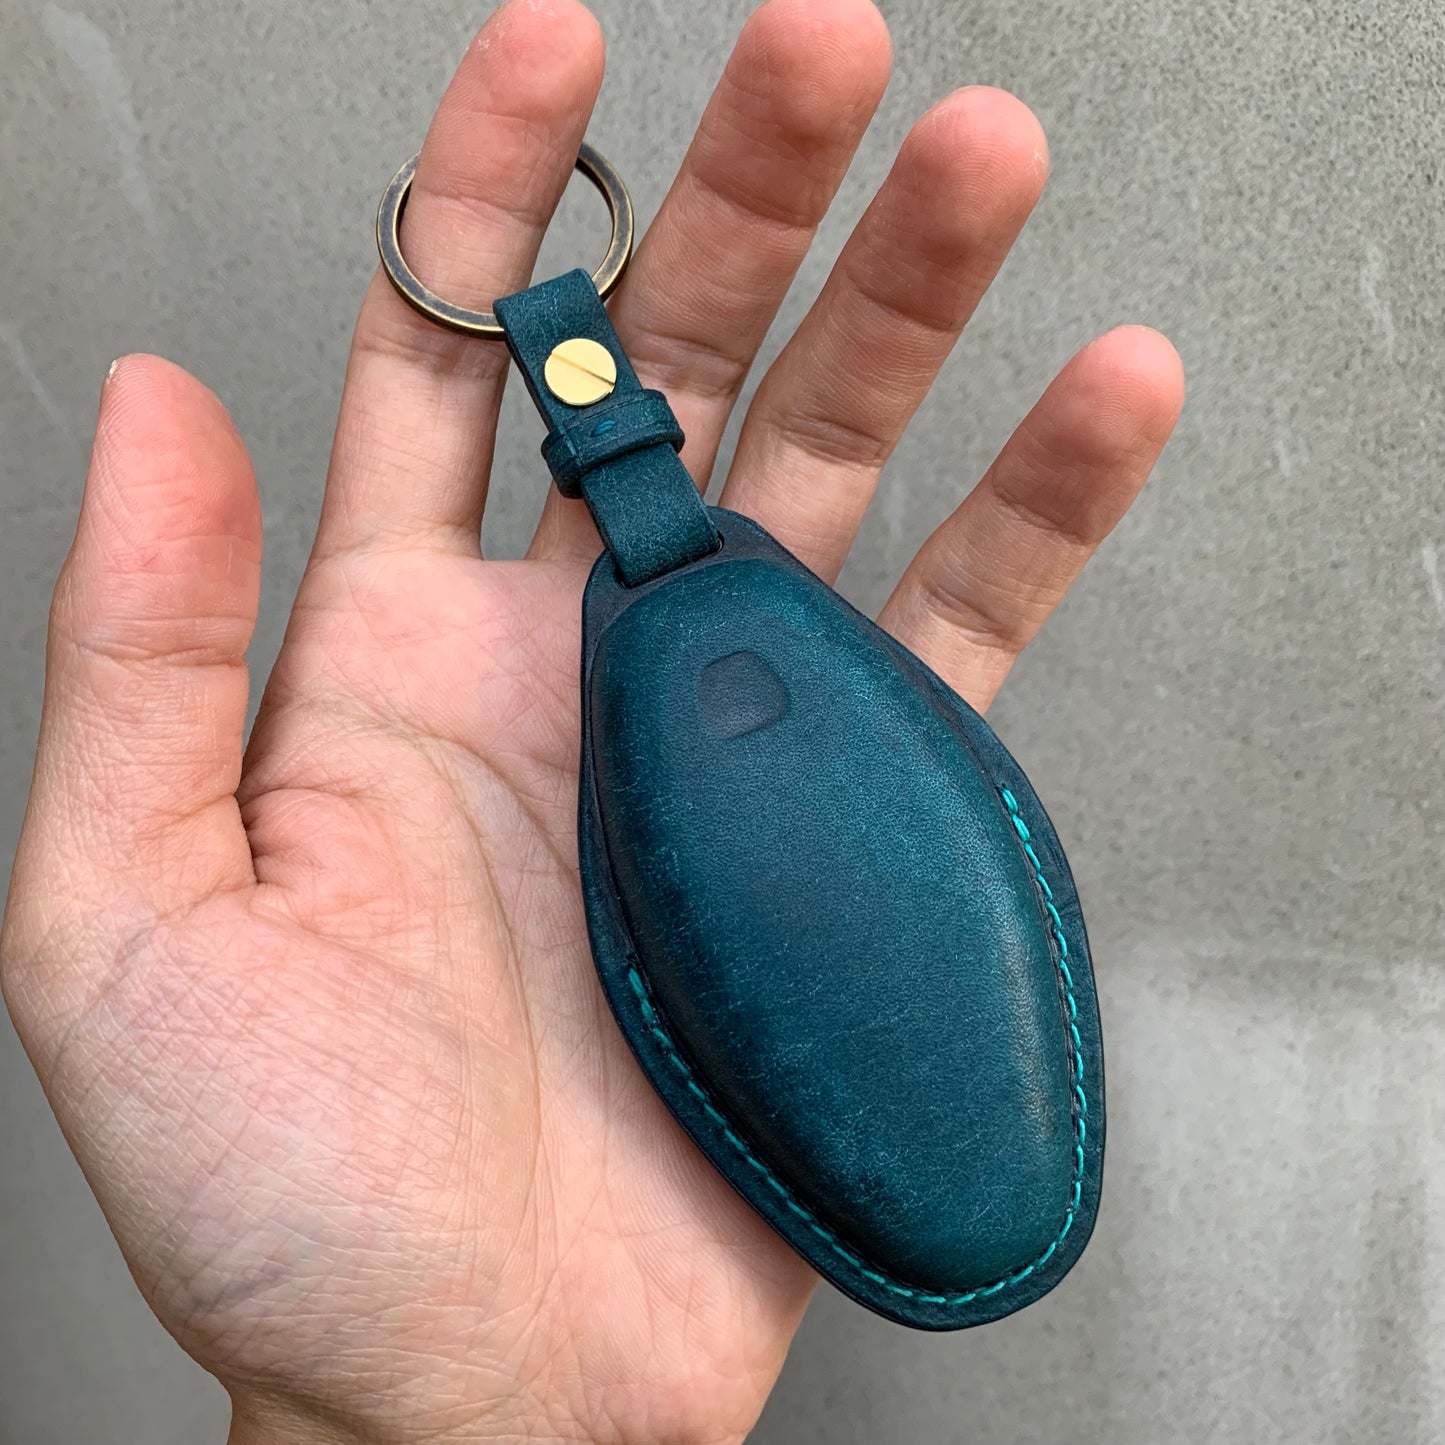 McLaren key case, key fob cover, Pueblo leather